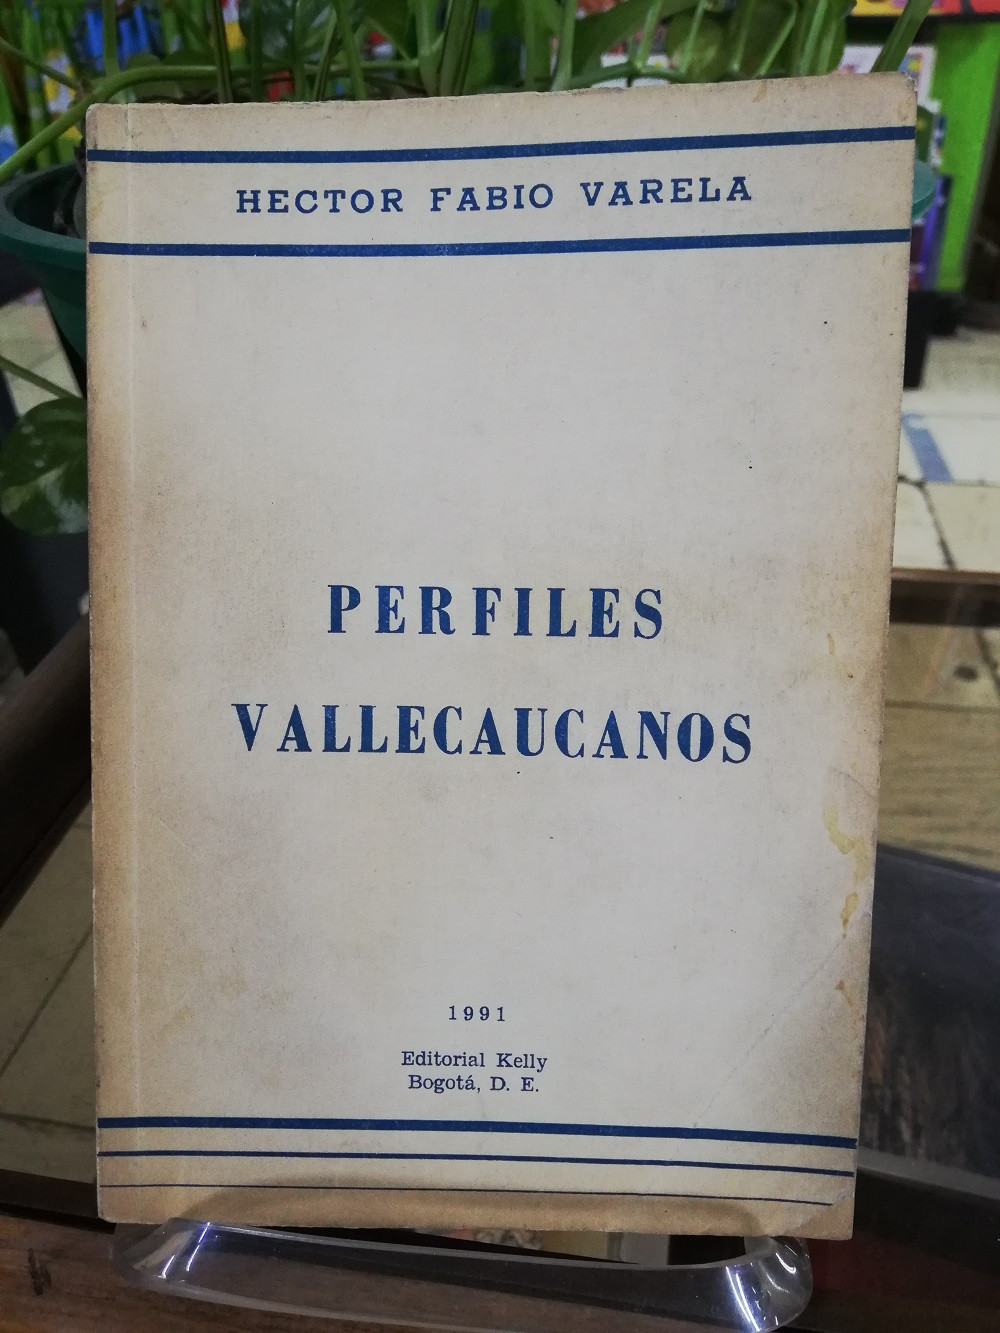 Imagen PERFILES VALLECAUCANOS - HECTOR FABIO VARELA 1